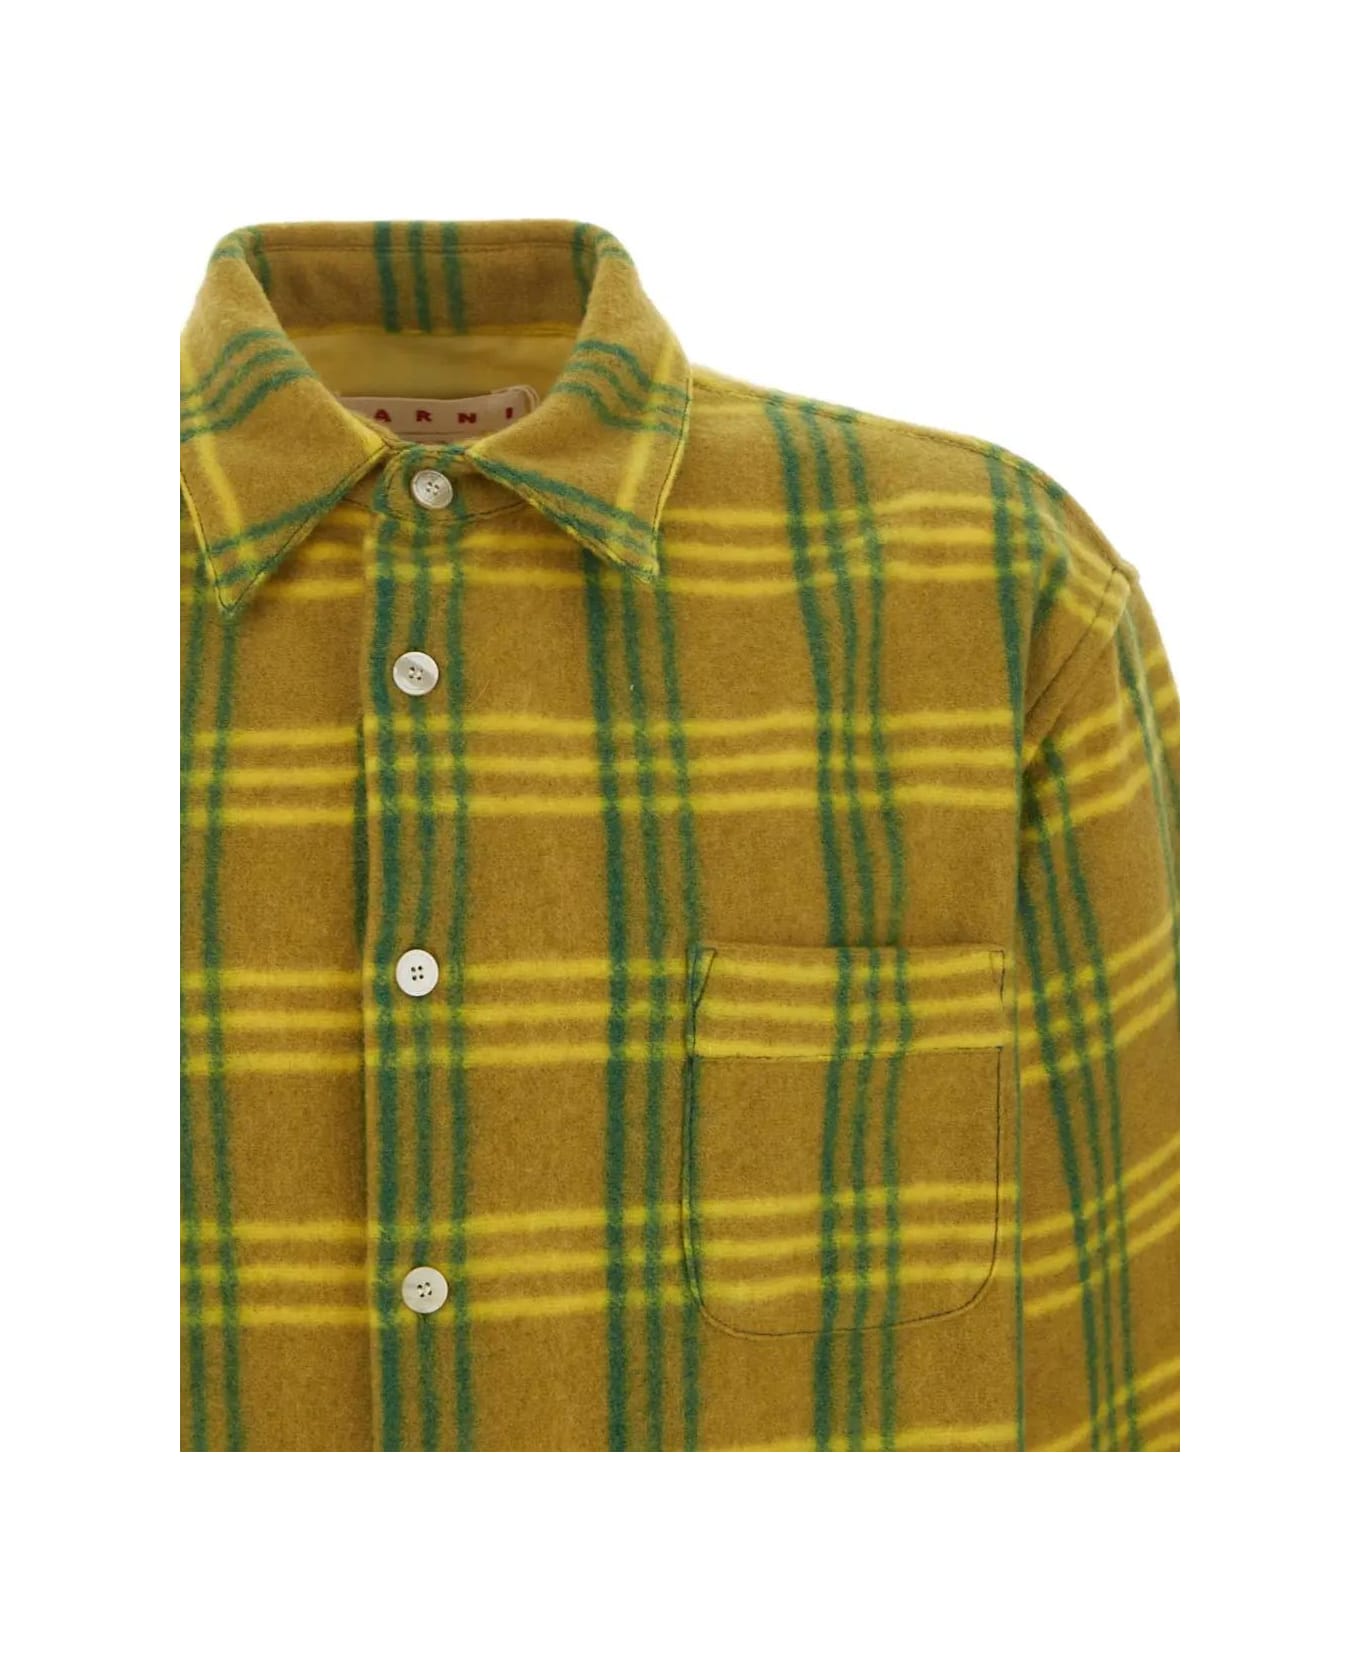 Marni Check Pile Shirt - Green